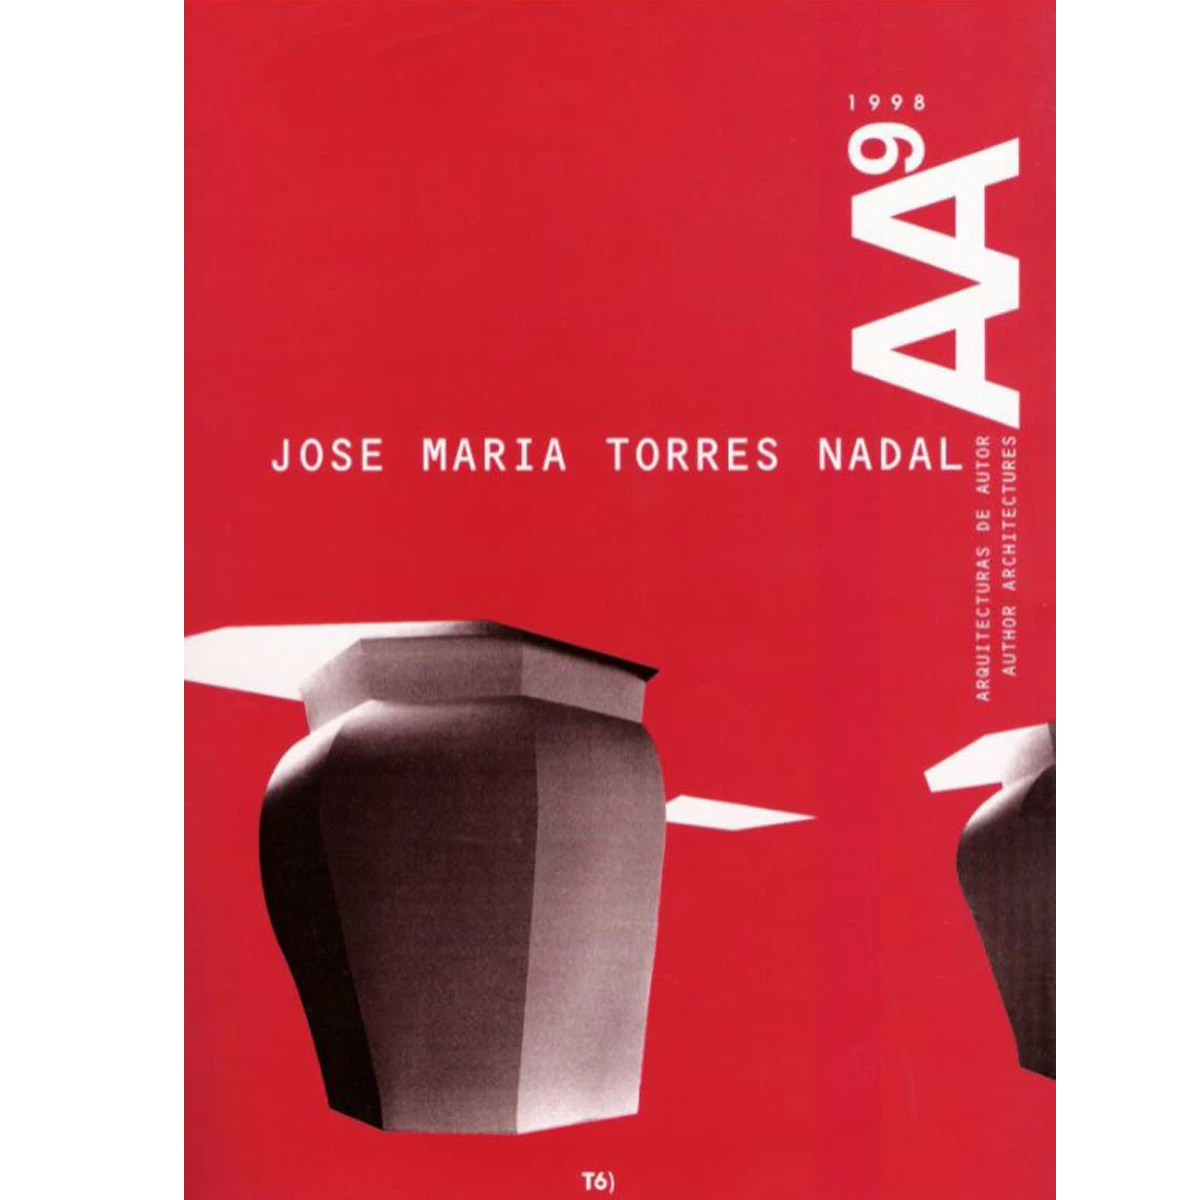 José María Torres Nadal: works